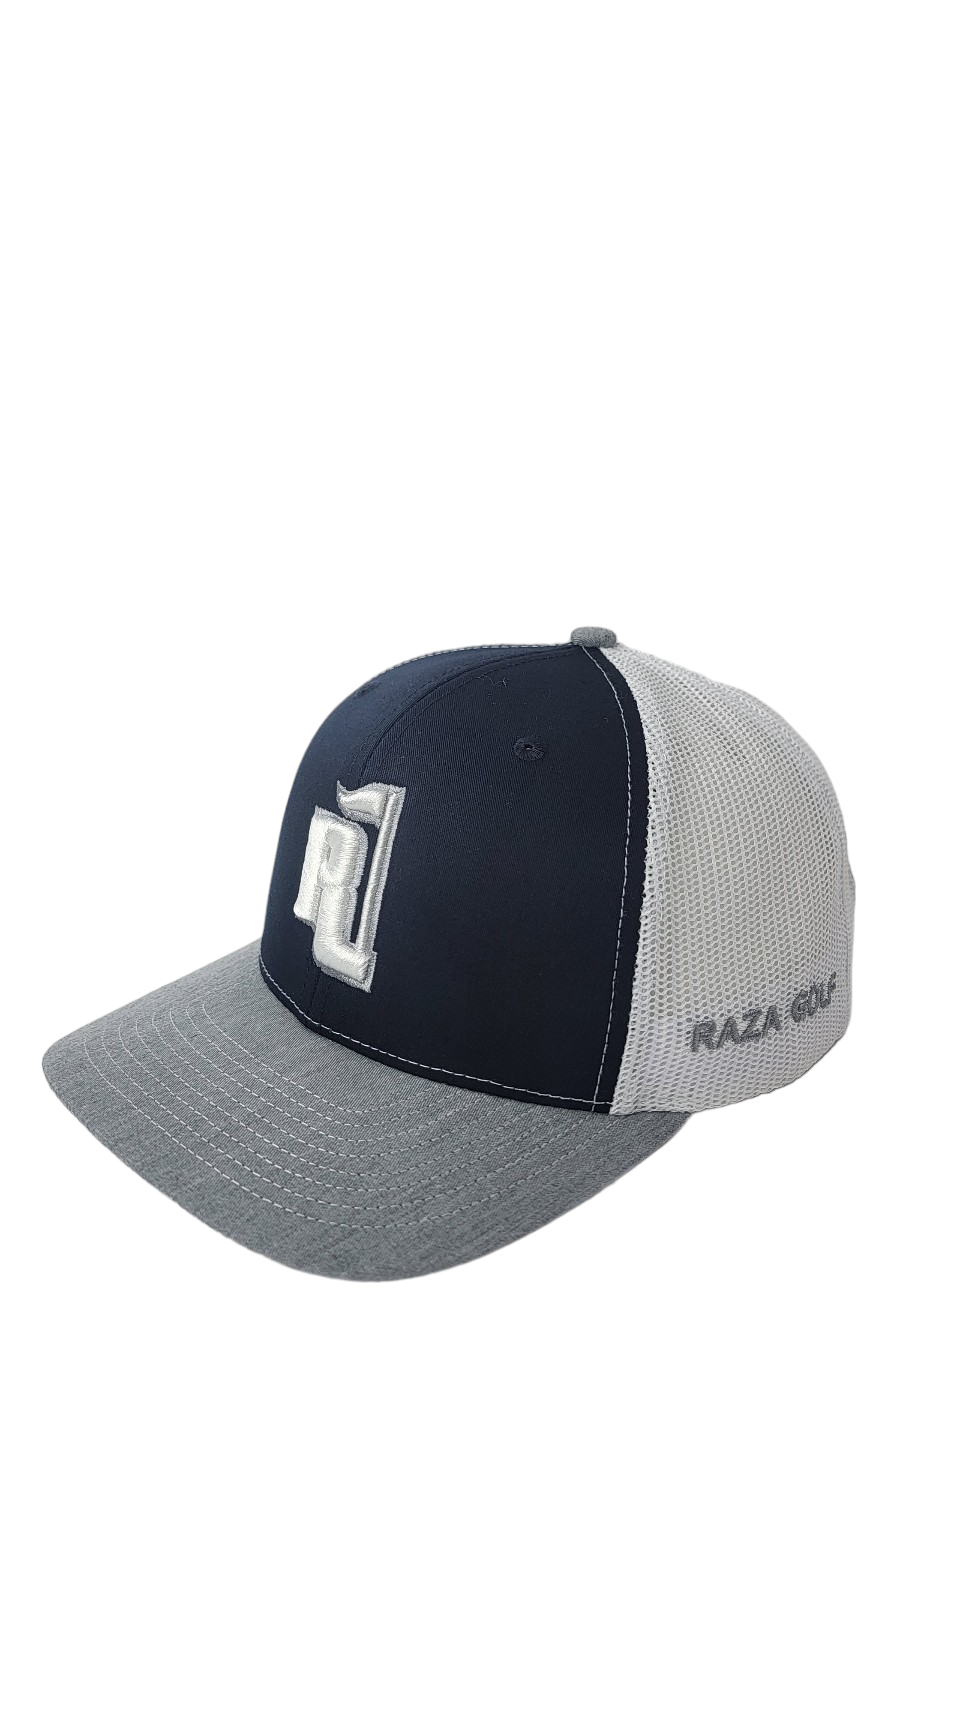 Raza Golf Navy and White Trucker Hat